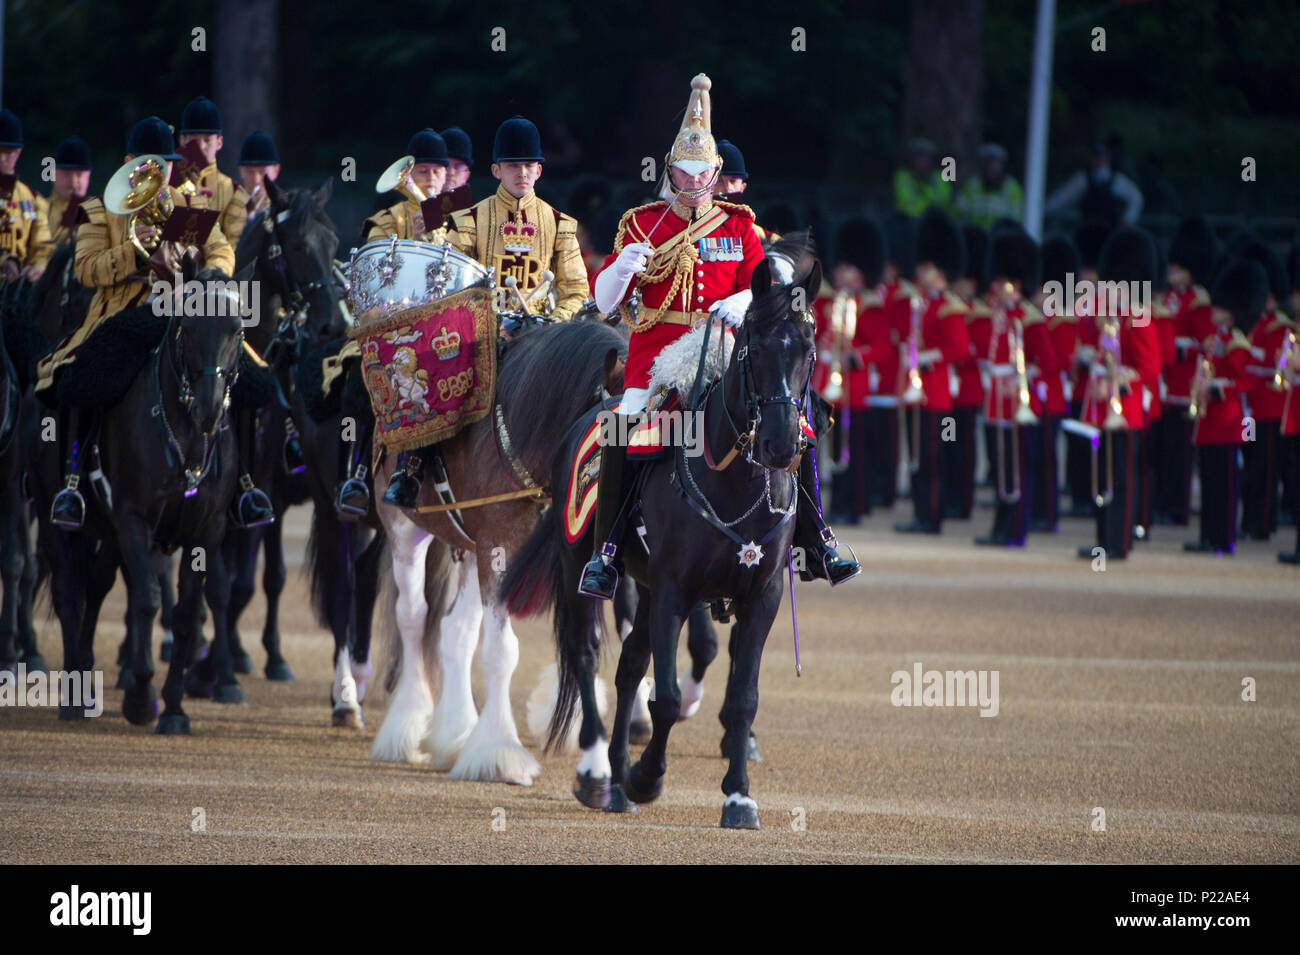 Vom 7. Juni 2018, London, UK. Britische Armee schlagen Retreat Abend militärische Musik spektakulär in Horse Guards Parade. Credit: Malcolm Park/Alamy Stockfoto